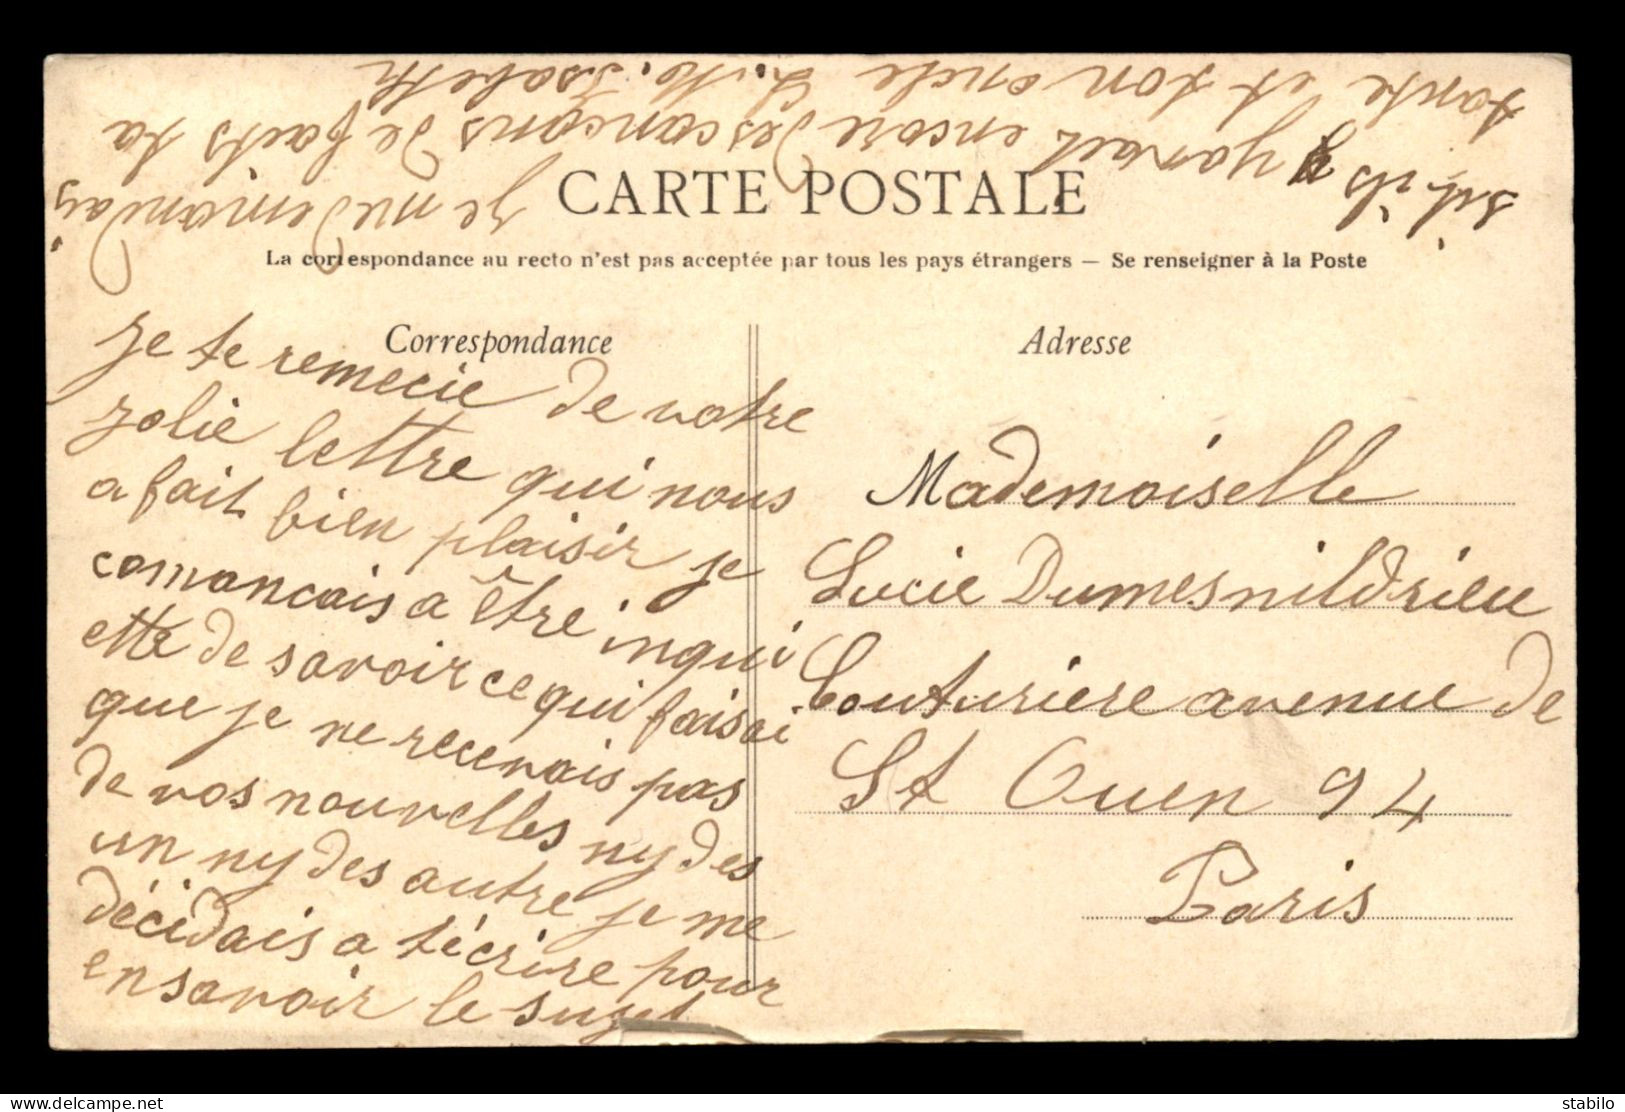 14 - CAEN - SOUVENIR DES FETES DU 26 JUILLET 1908 - INAUGURATION DU NOUVEL HOPITAL - Caen